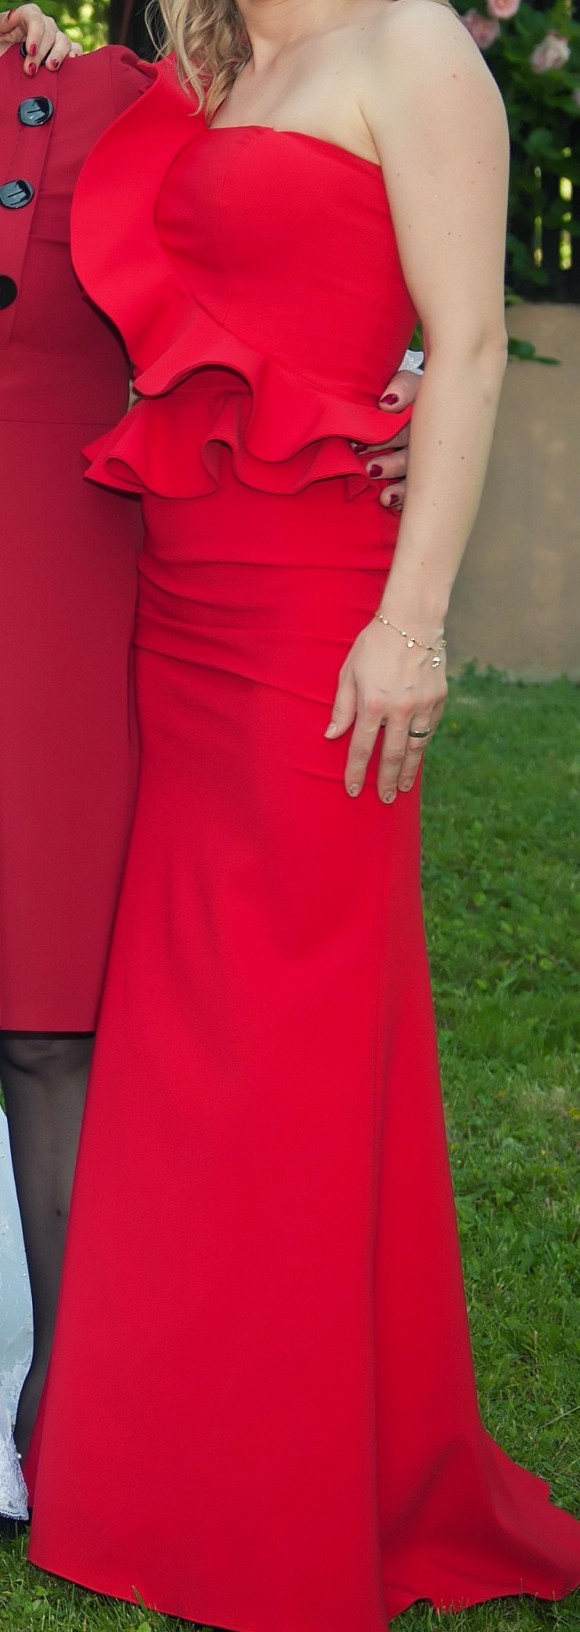 Sveana crvena haljina